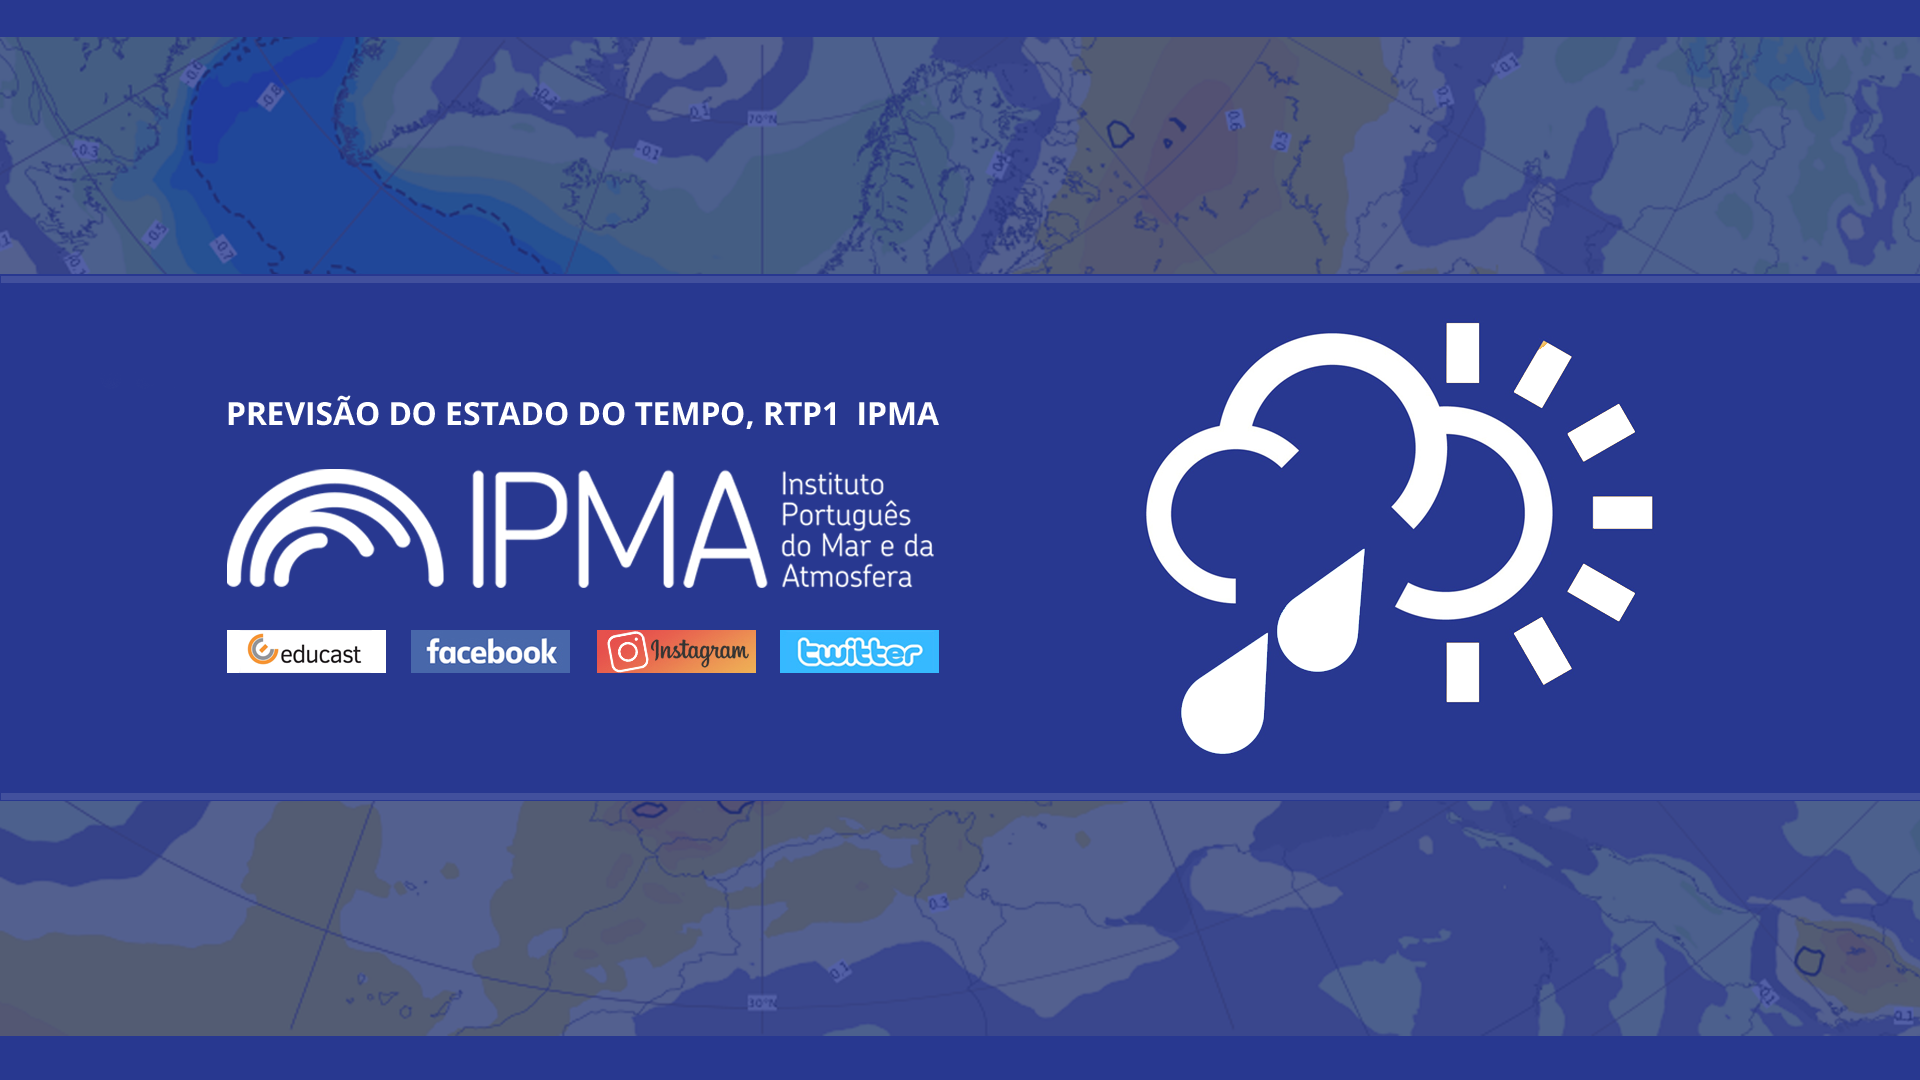  Previsão do estado do tempo, RTP1, 13-05-2022, IPMA.